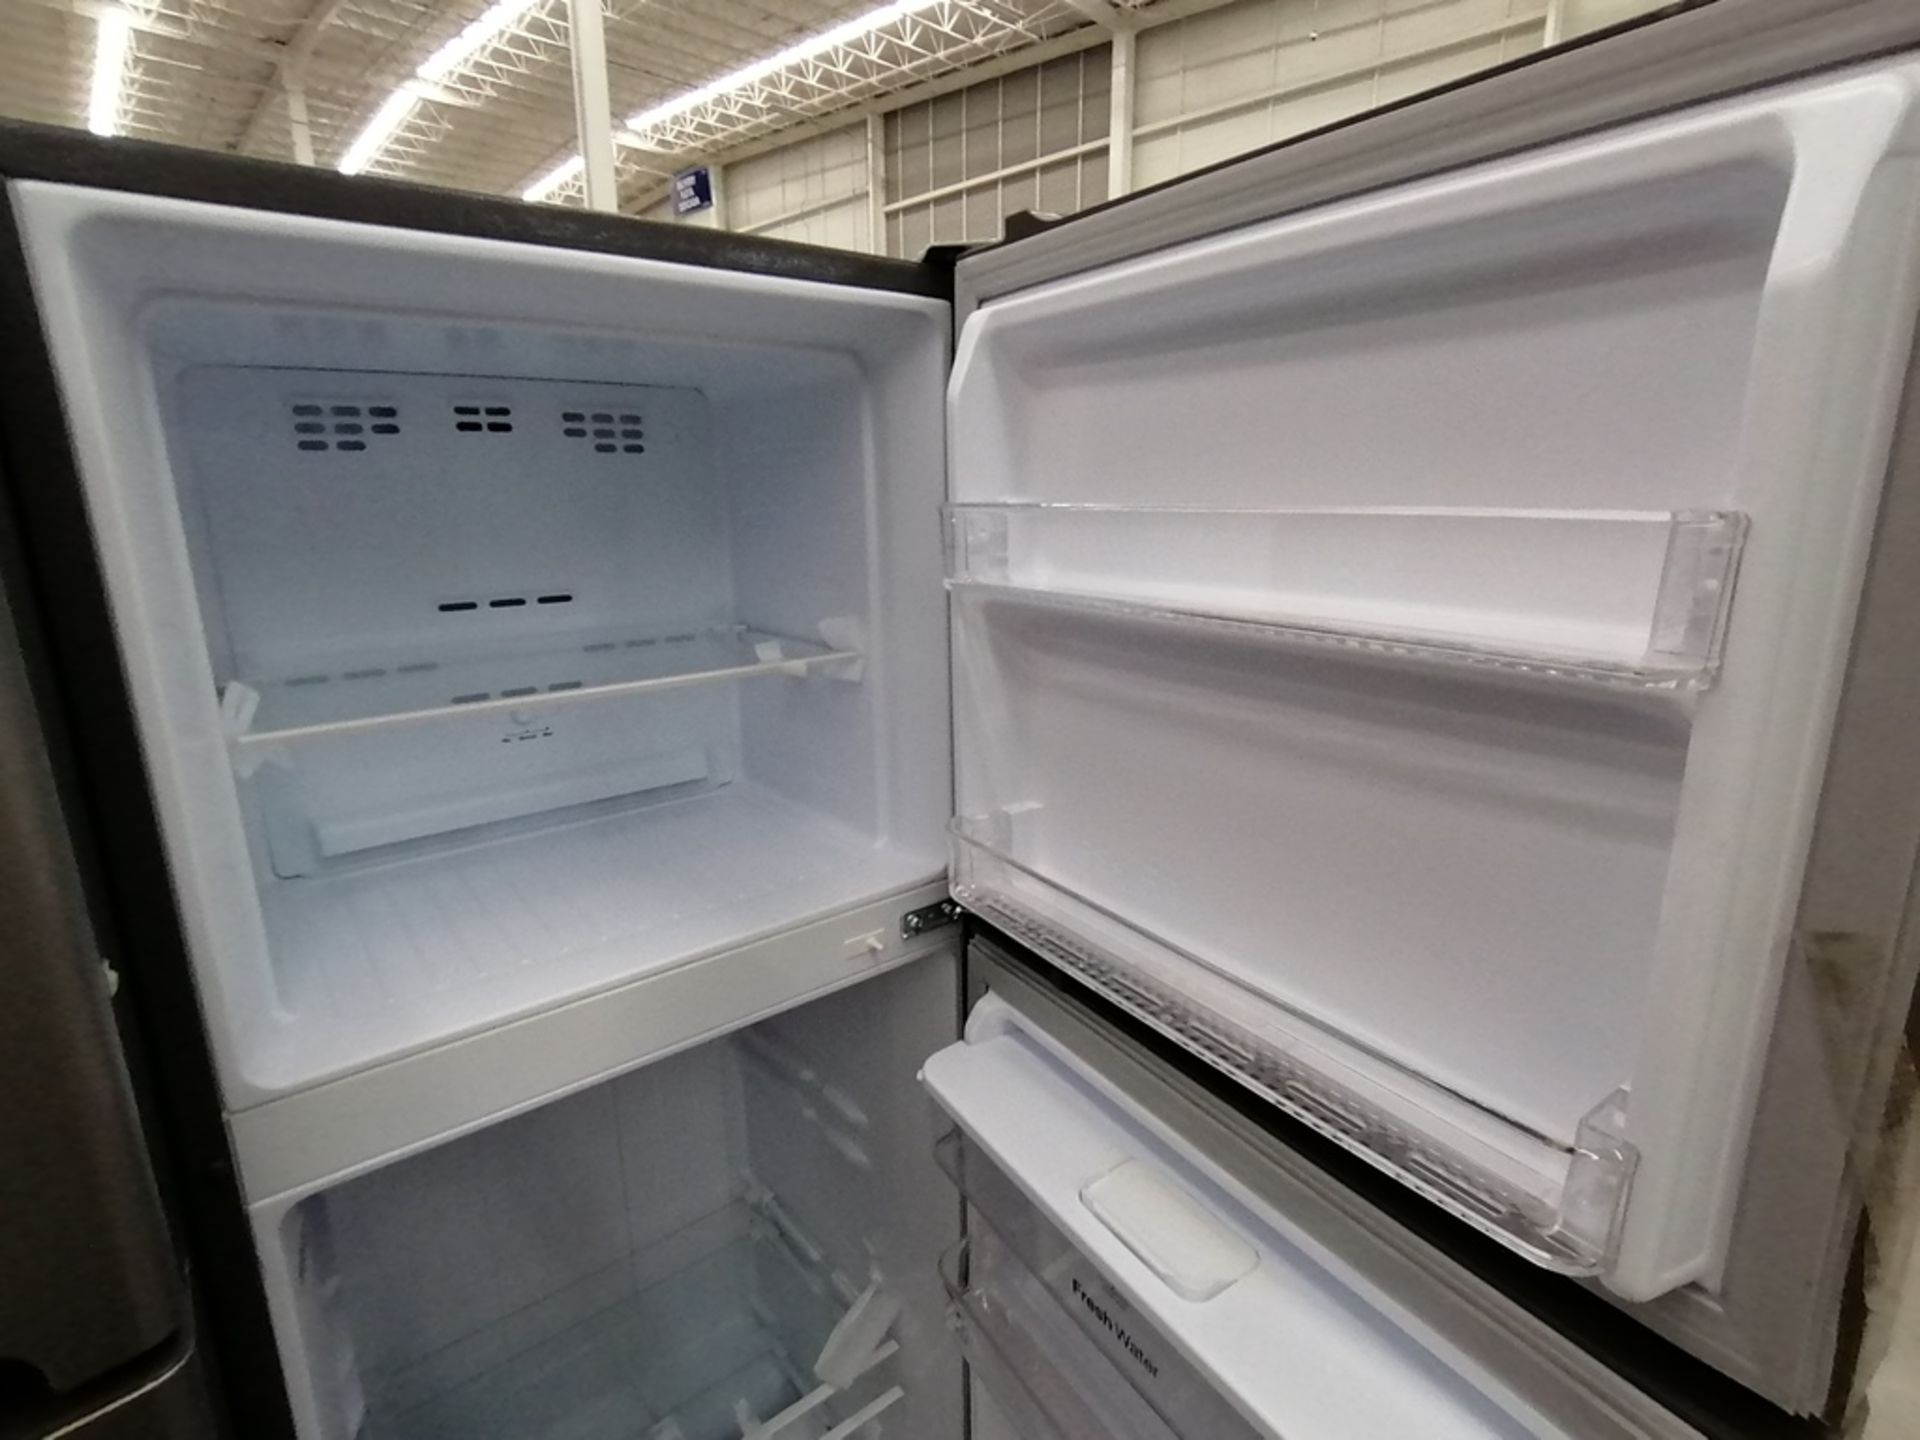 Lote de 2 Refrigeradores incluye: 1 Refrigerador con dispensador de agua, Marca Winia, Modelo DFR32 - Image 13 of 15